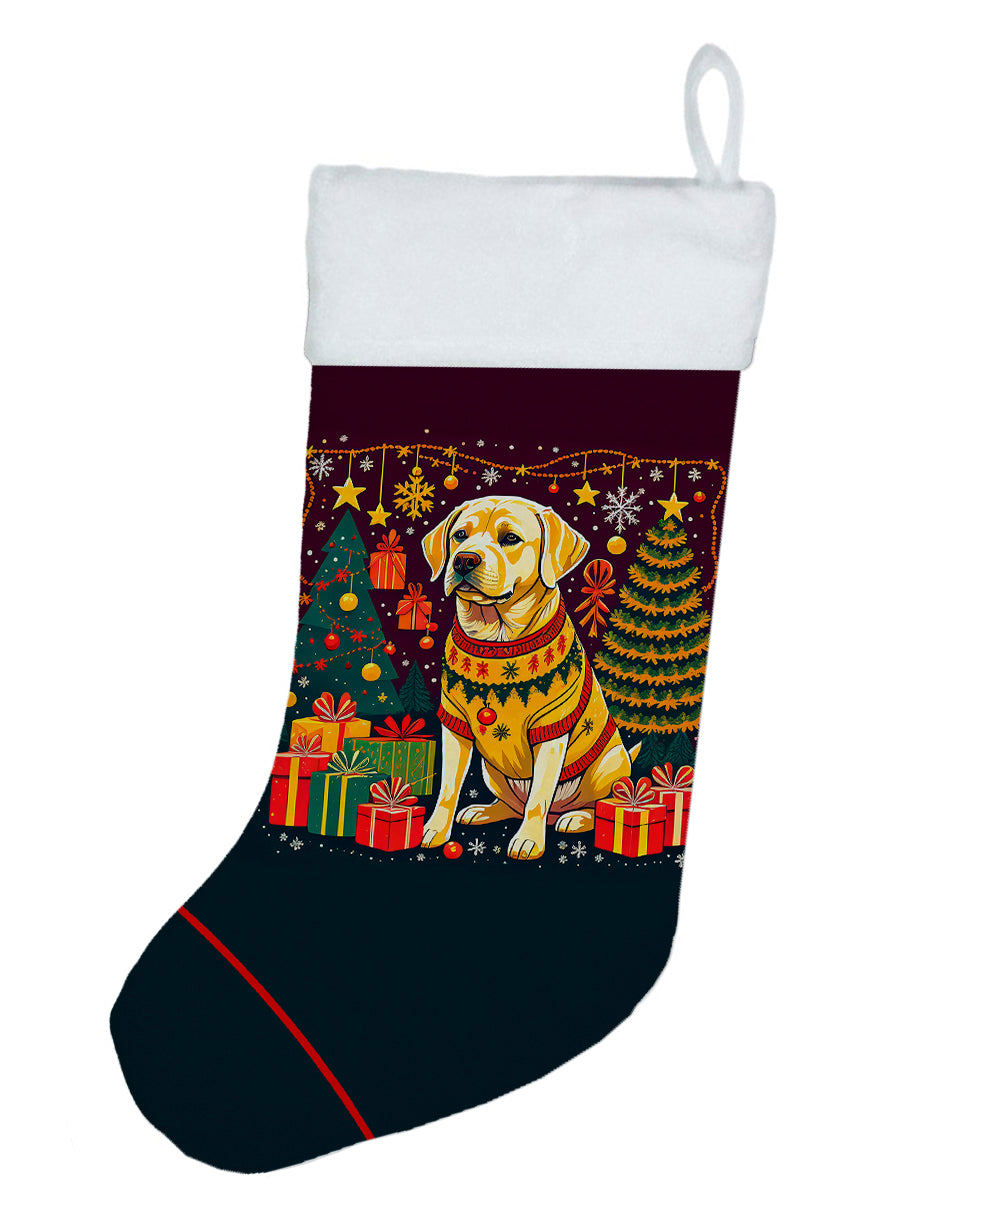 Buy this Yellow Labrador Retriever Christmas Christmas Stocking